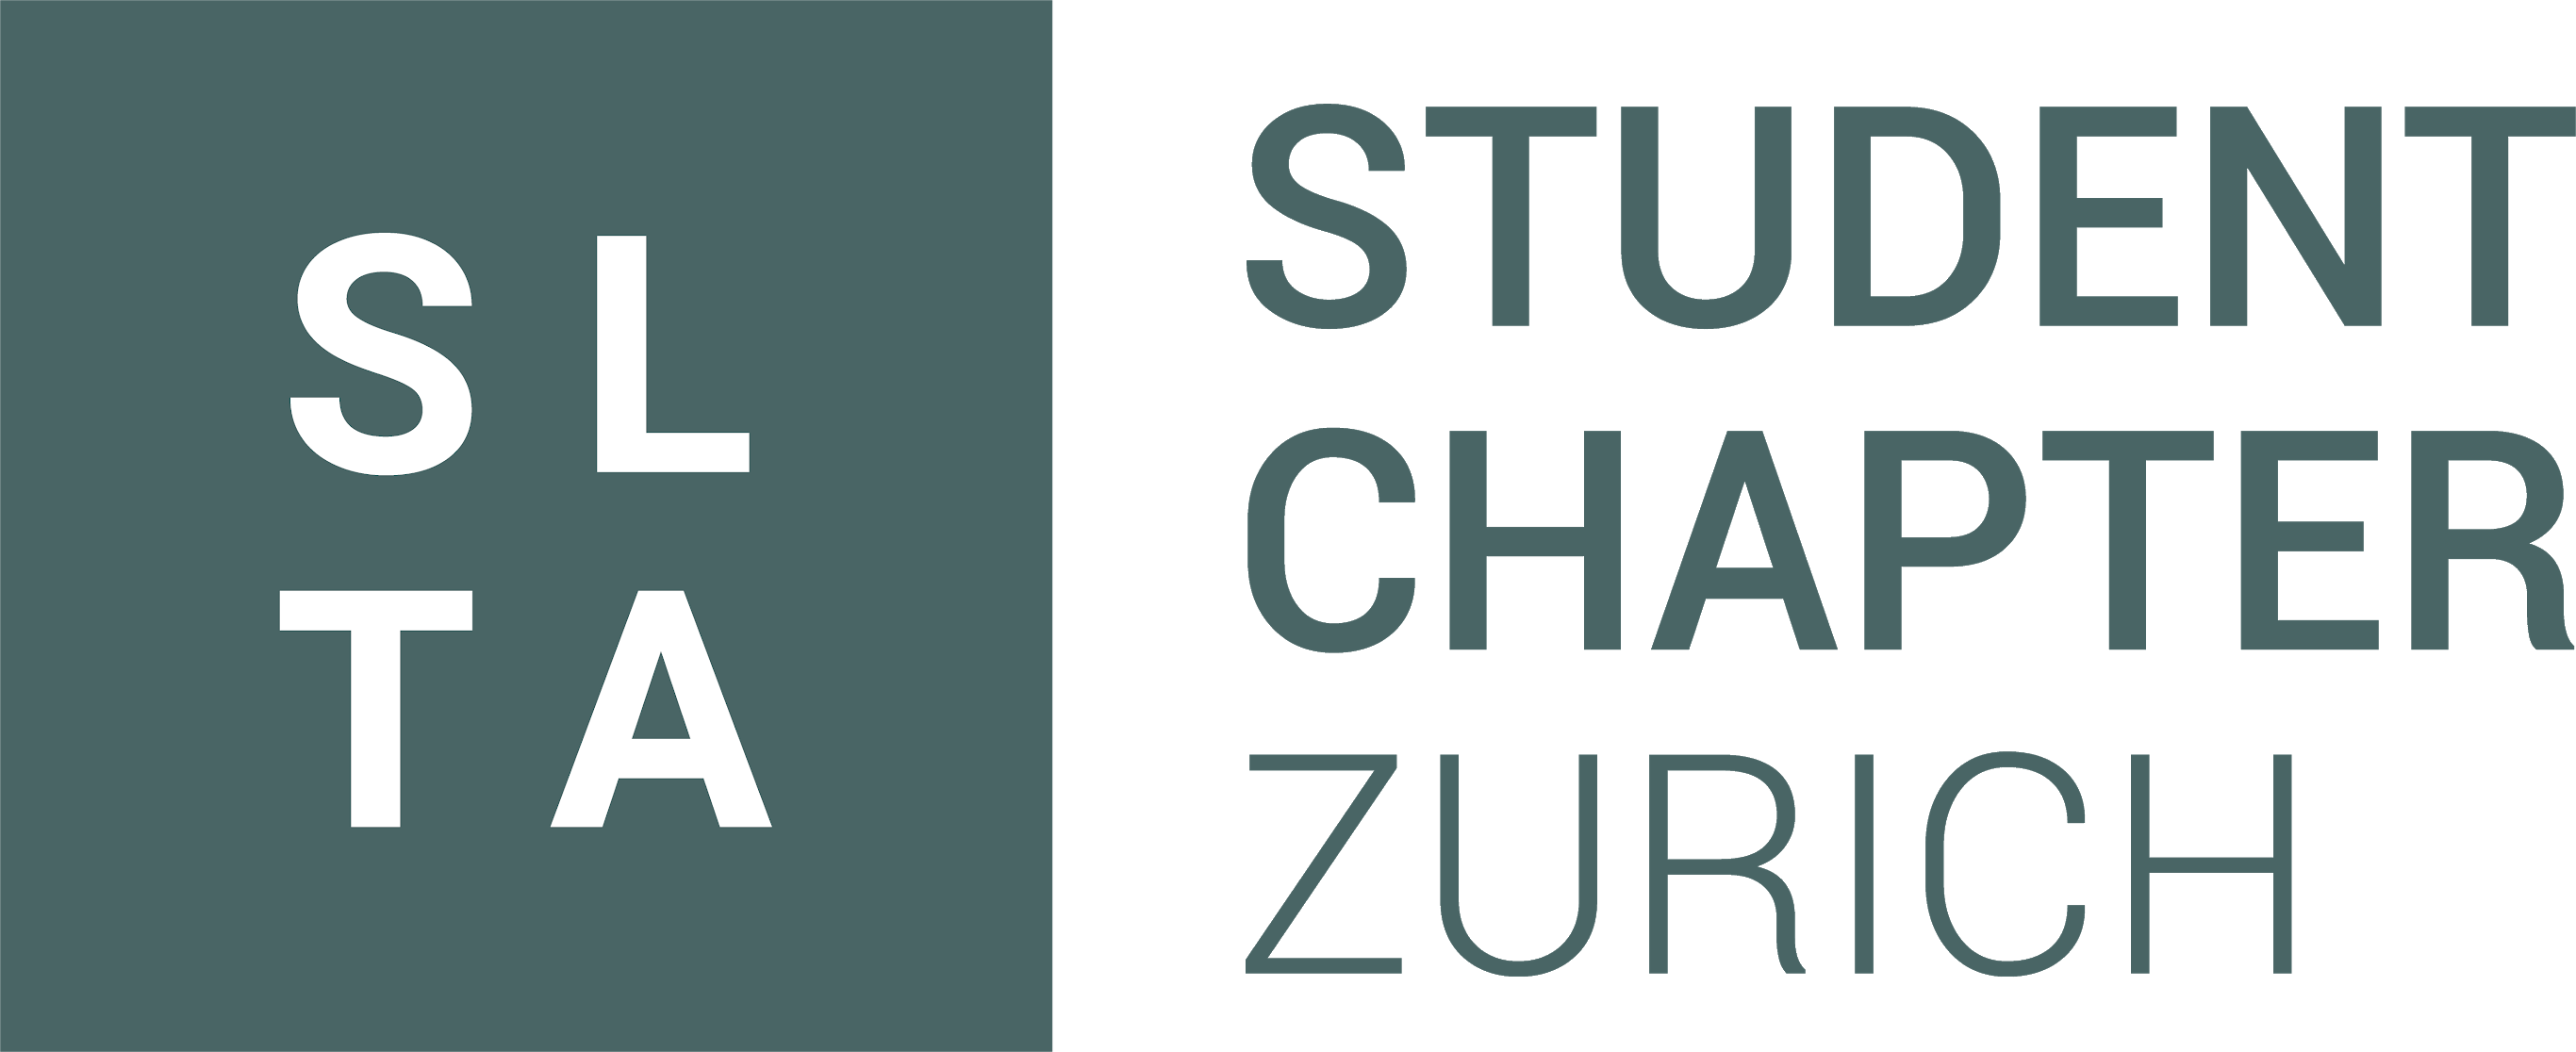 SLTA Student Chapter Zurich